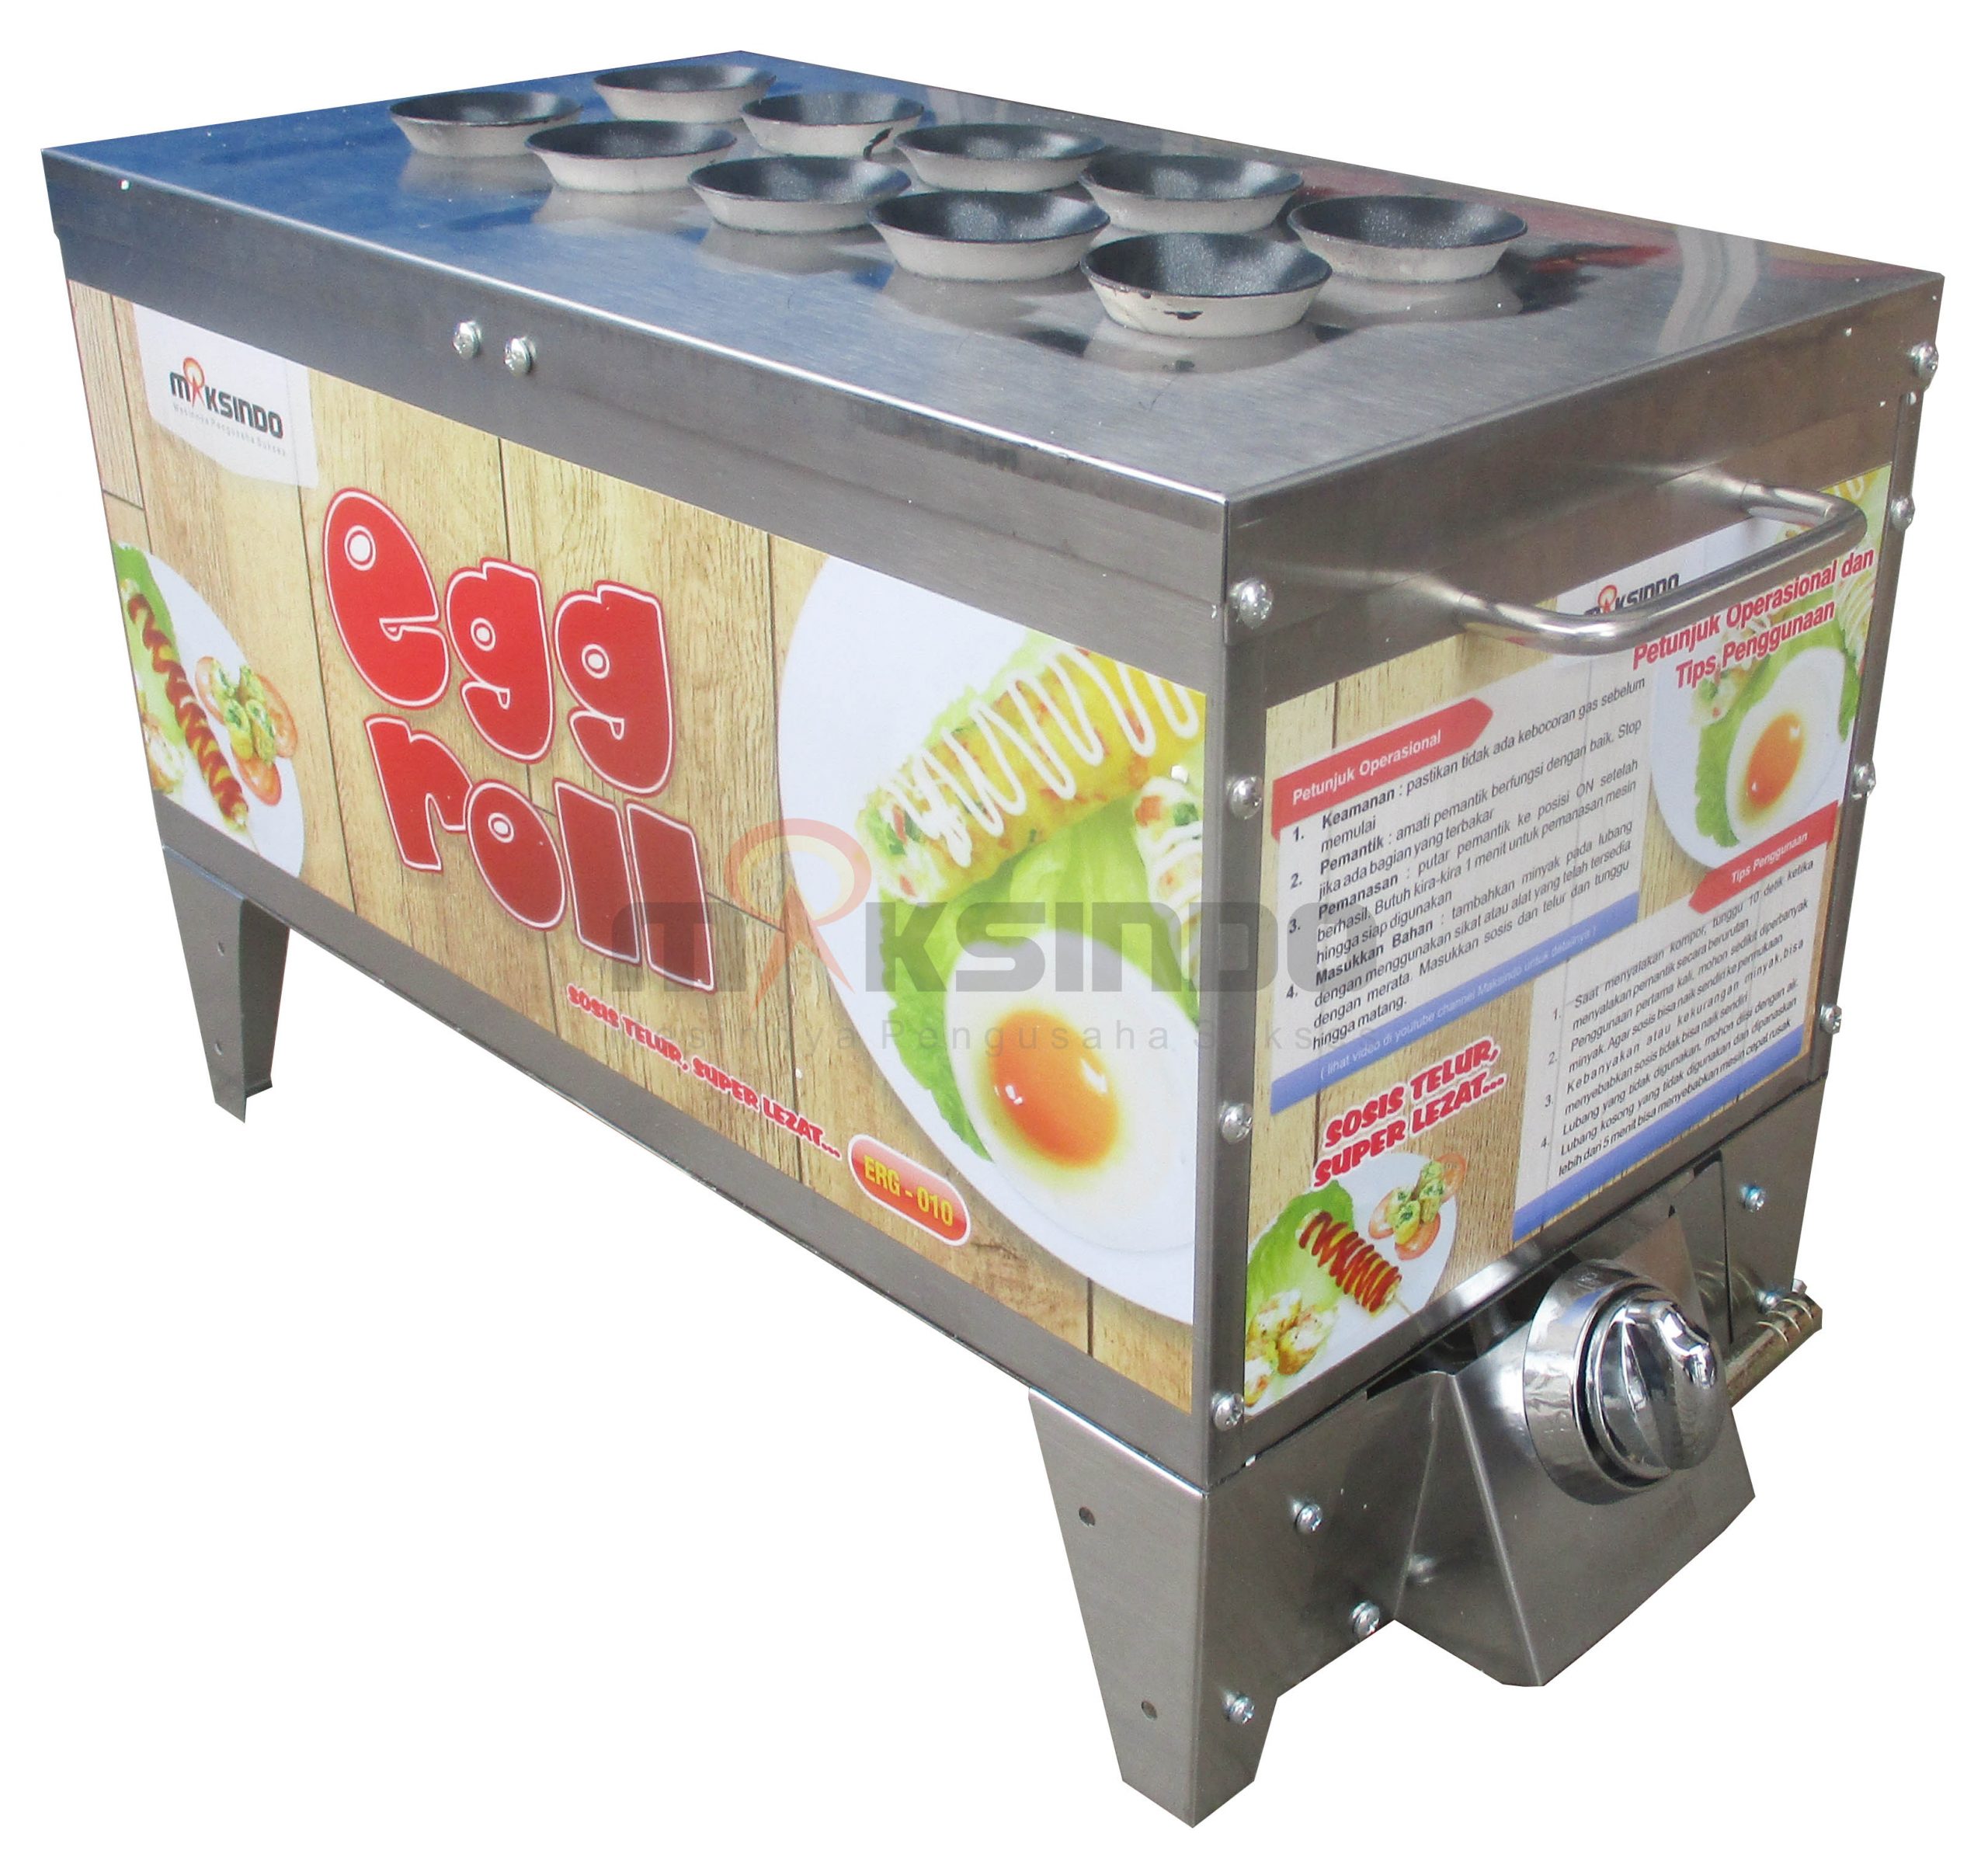 Jual Mesin Pembuat Egg Roll ERG-010 di Blitar